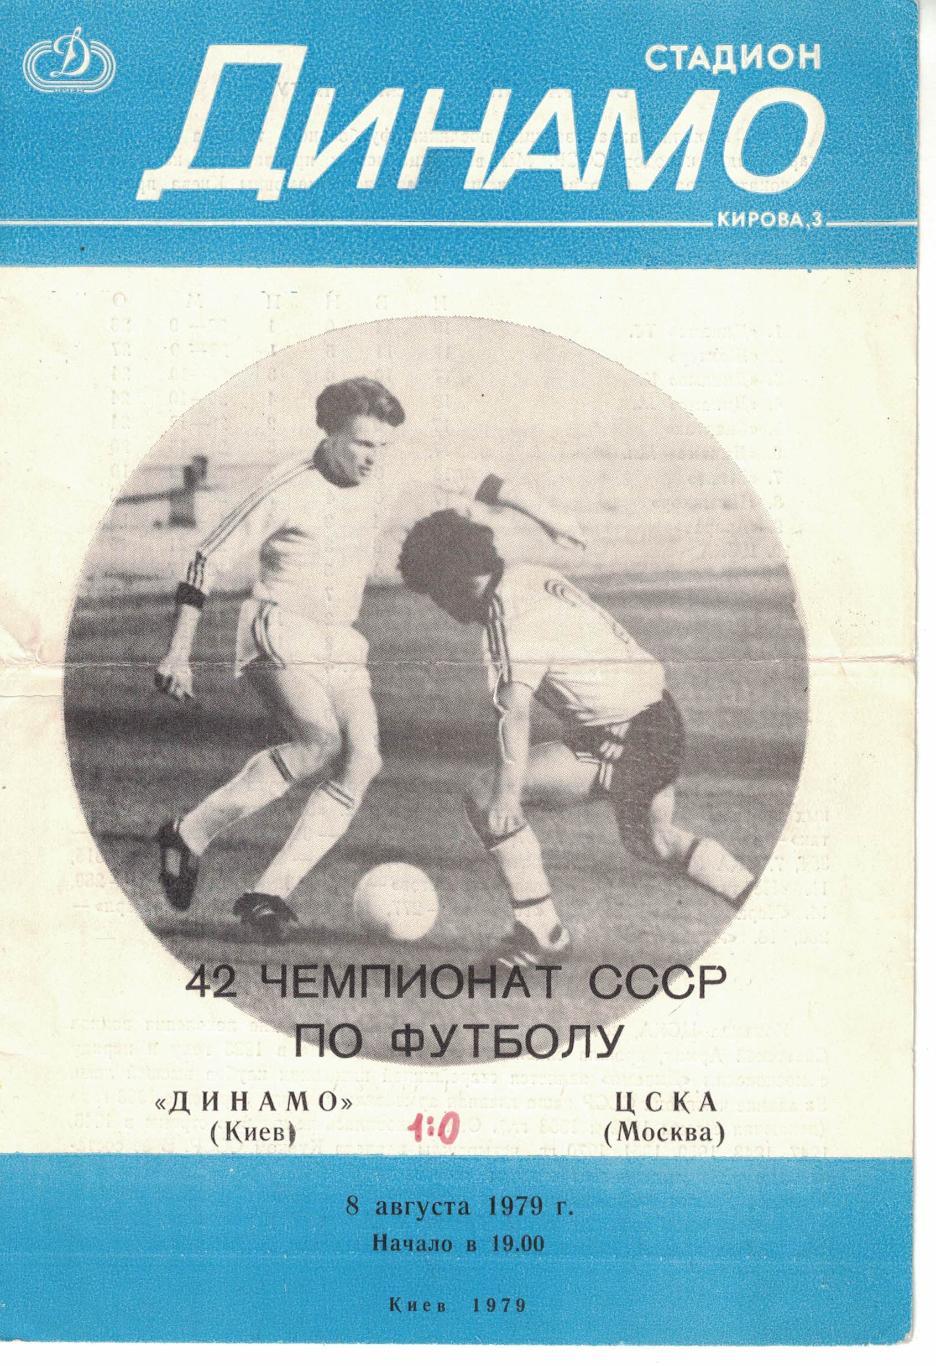 Динамо Киев - ЦСКА 08.08.1979 Чемпионат СССР